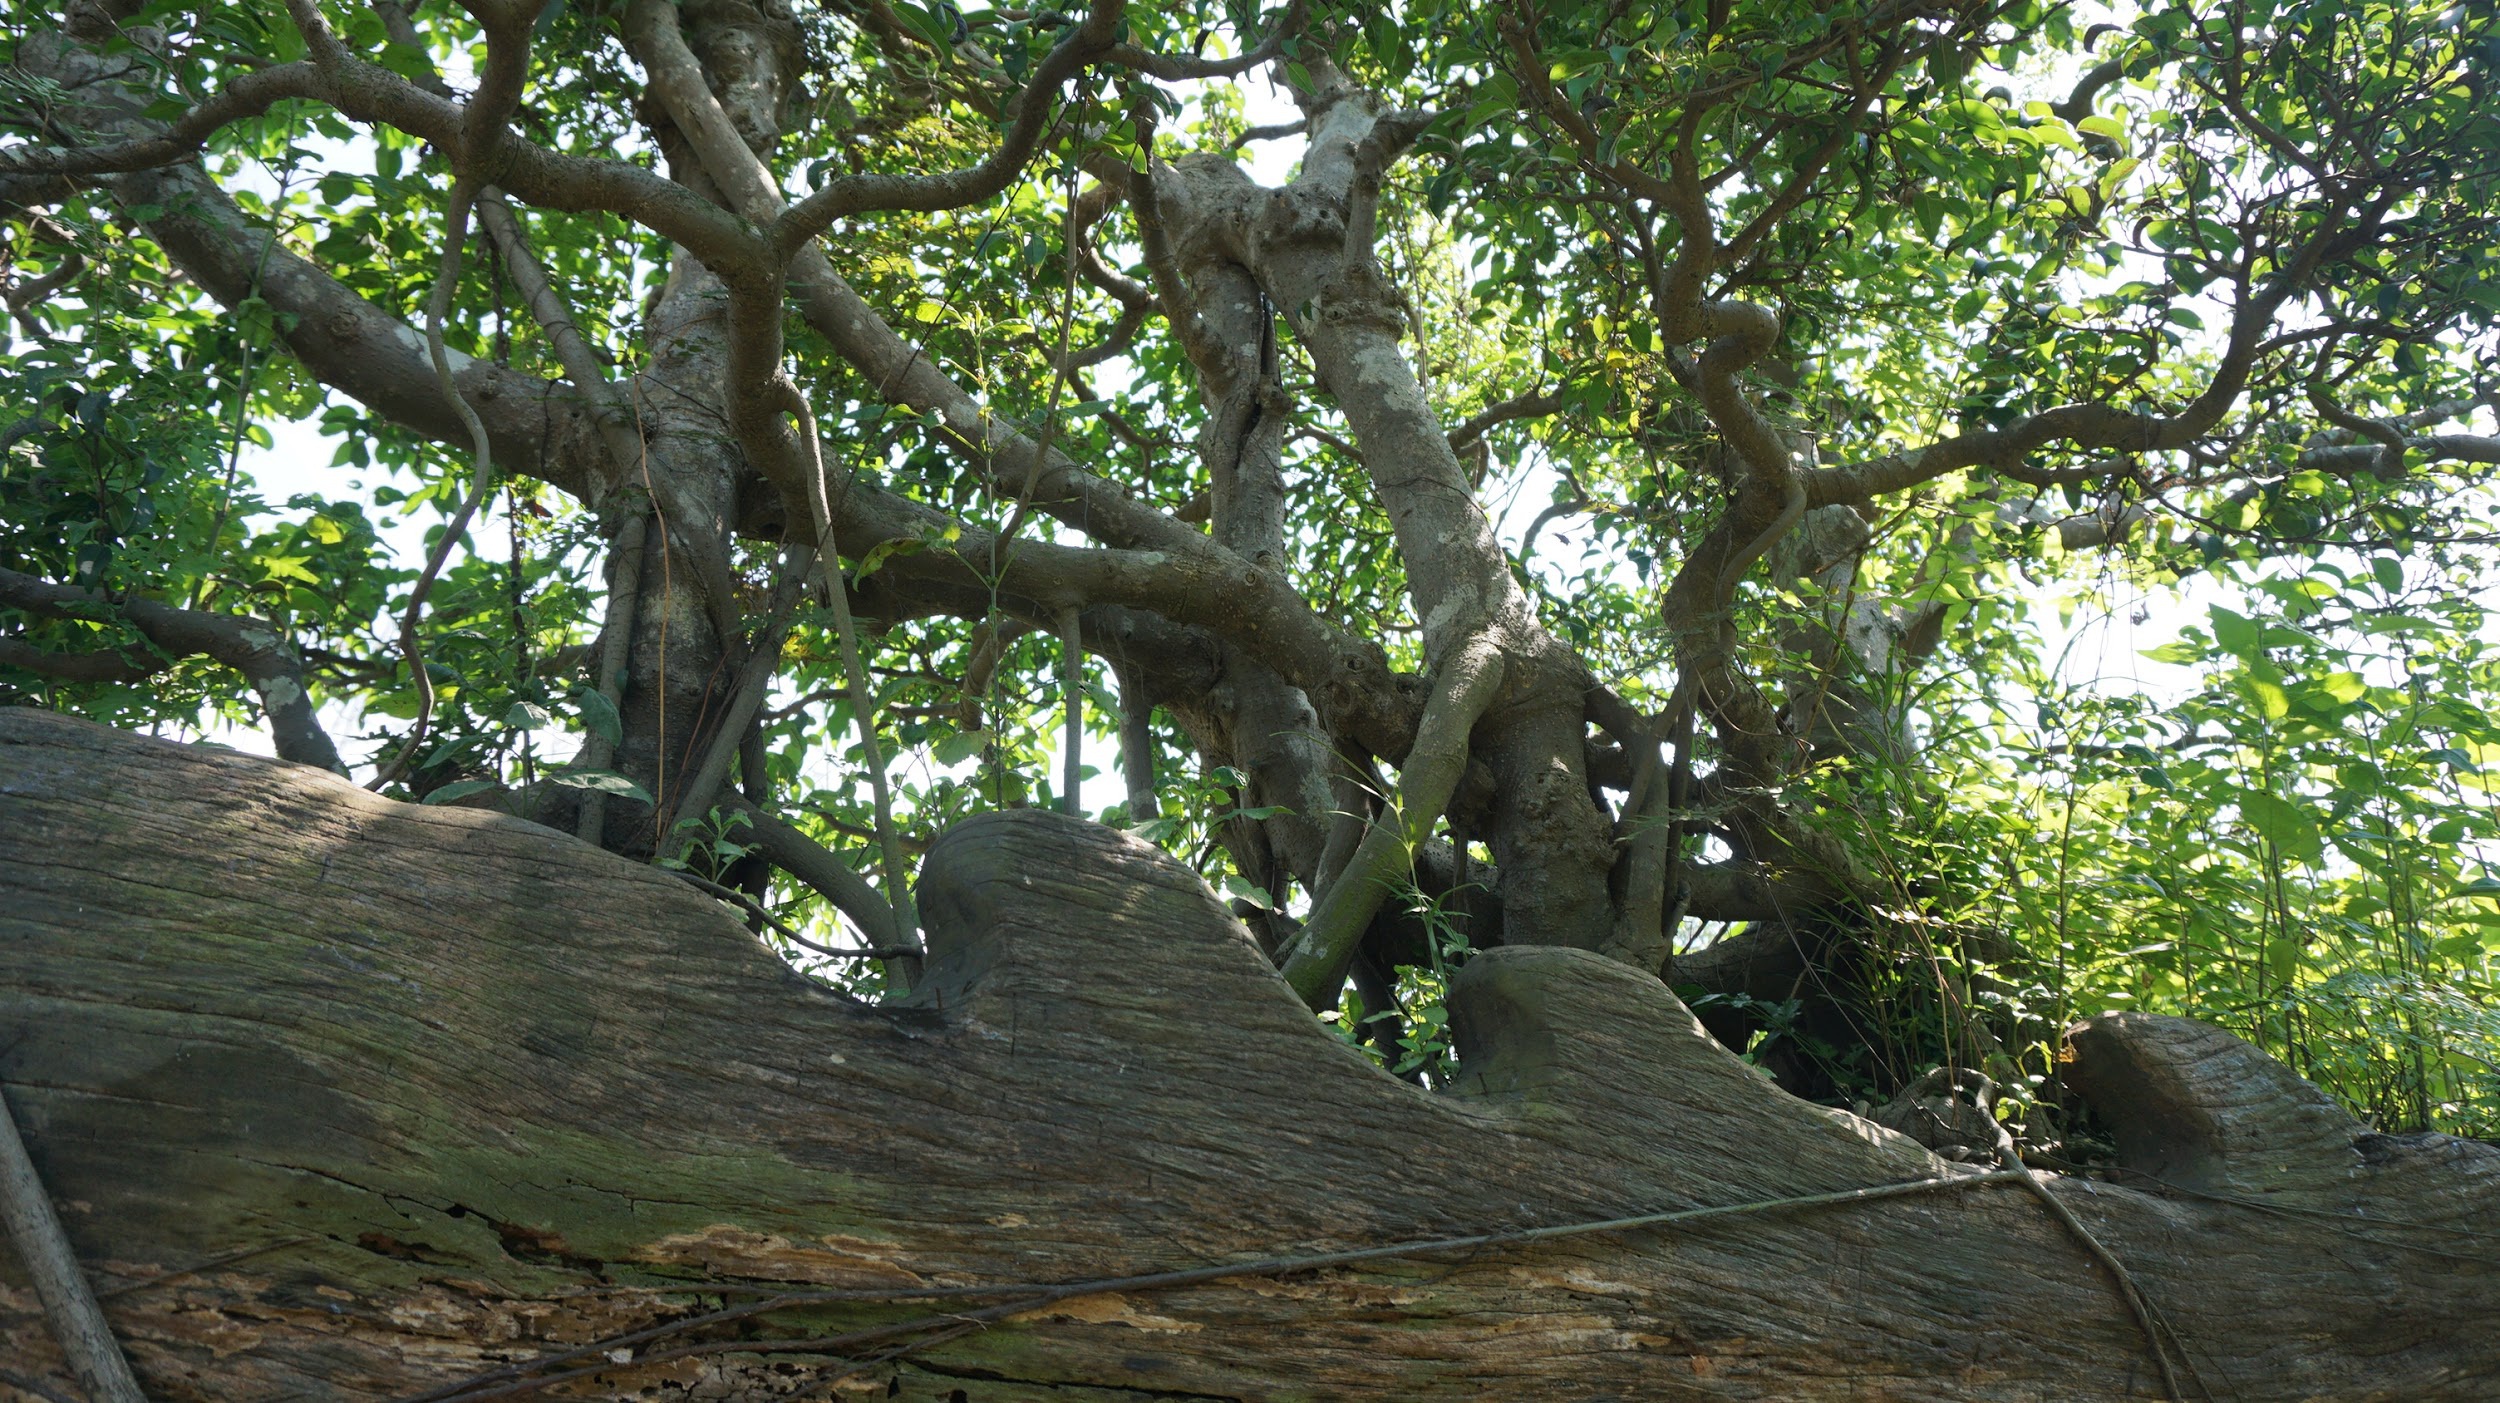 Khu vườn bỏ hoang toàn 'siêu cây' bạc tỷ của đại gia nức tiếng một thời Hang-chuc-goc-co-thu-dang-than-dang-phat-gia-tram-ty-bo-hoang-o-ha-noidocx-1588065444300